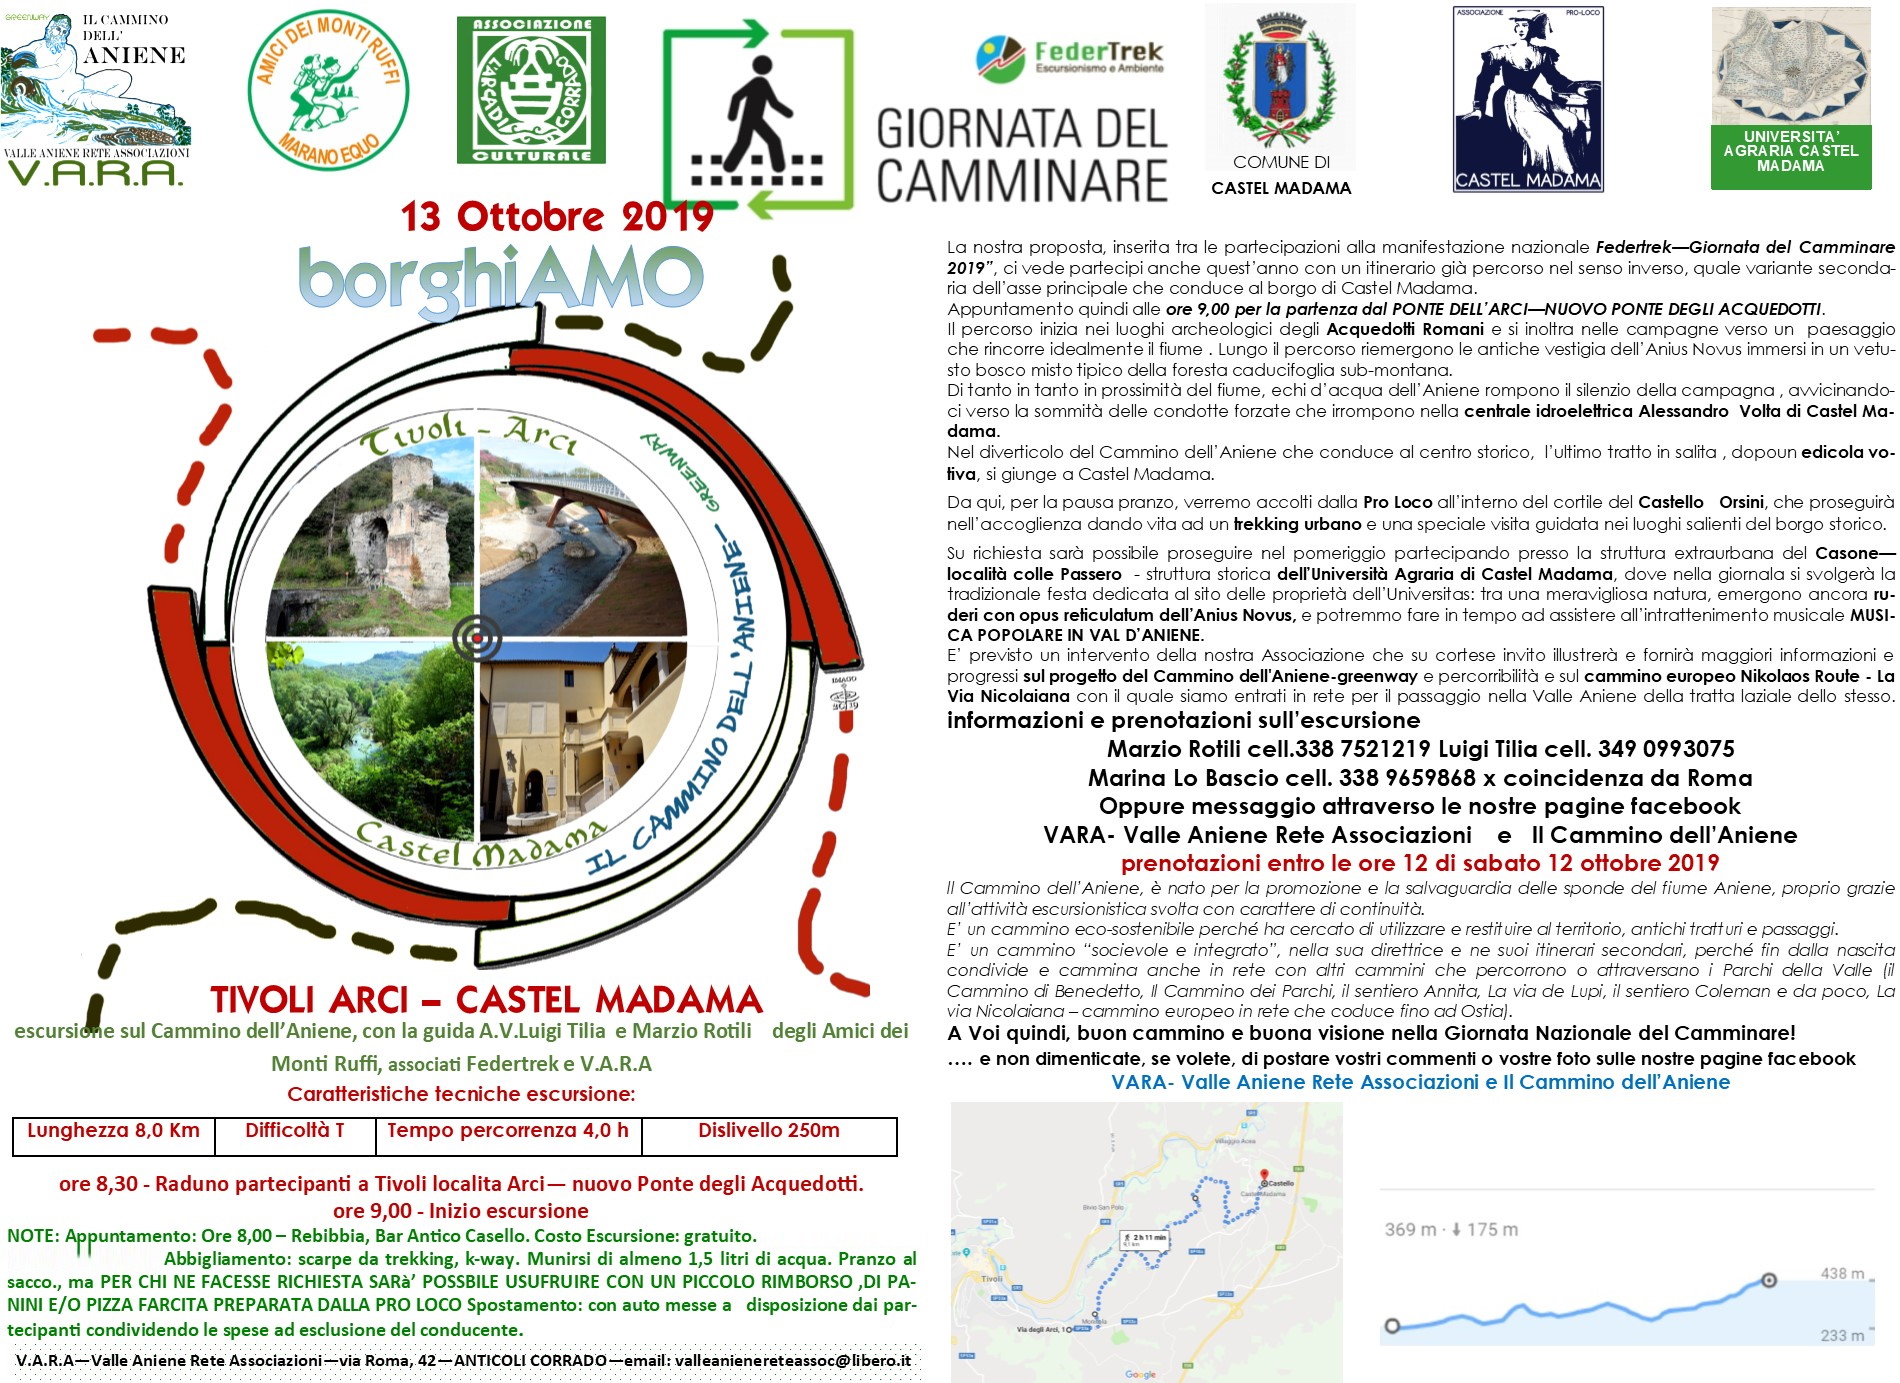 borghiAMO - Tivoli Arci - Castel Madama - escursione e trekking urbano sul Cammino dell\'Aniene